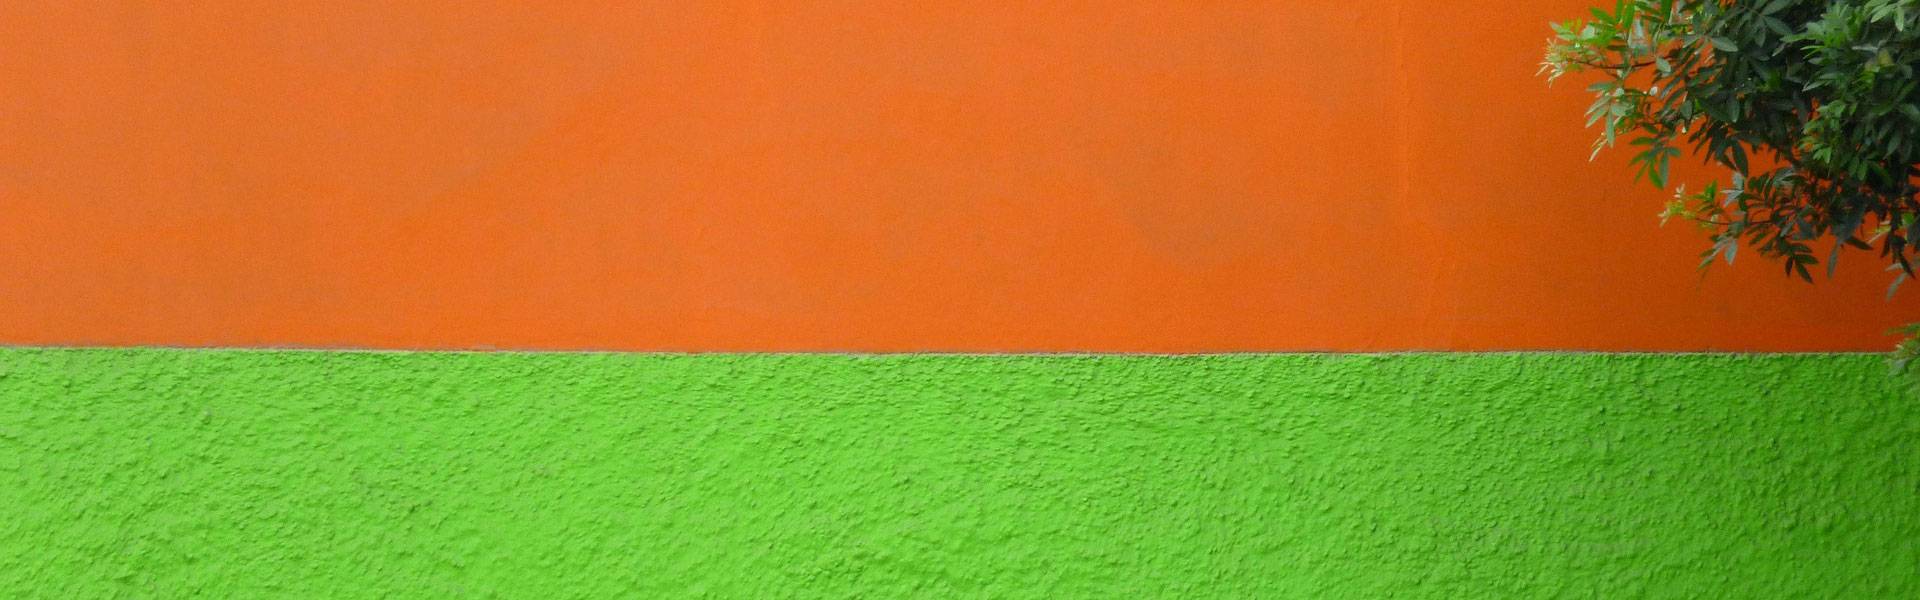 Краска для стен в квартире с эффектом штукатурки: как выглядит венецианская фактурная или структурная, как ее наносить, этапы работ по очереди и советы